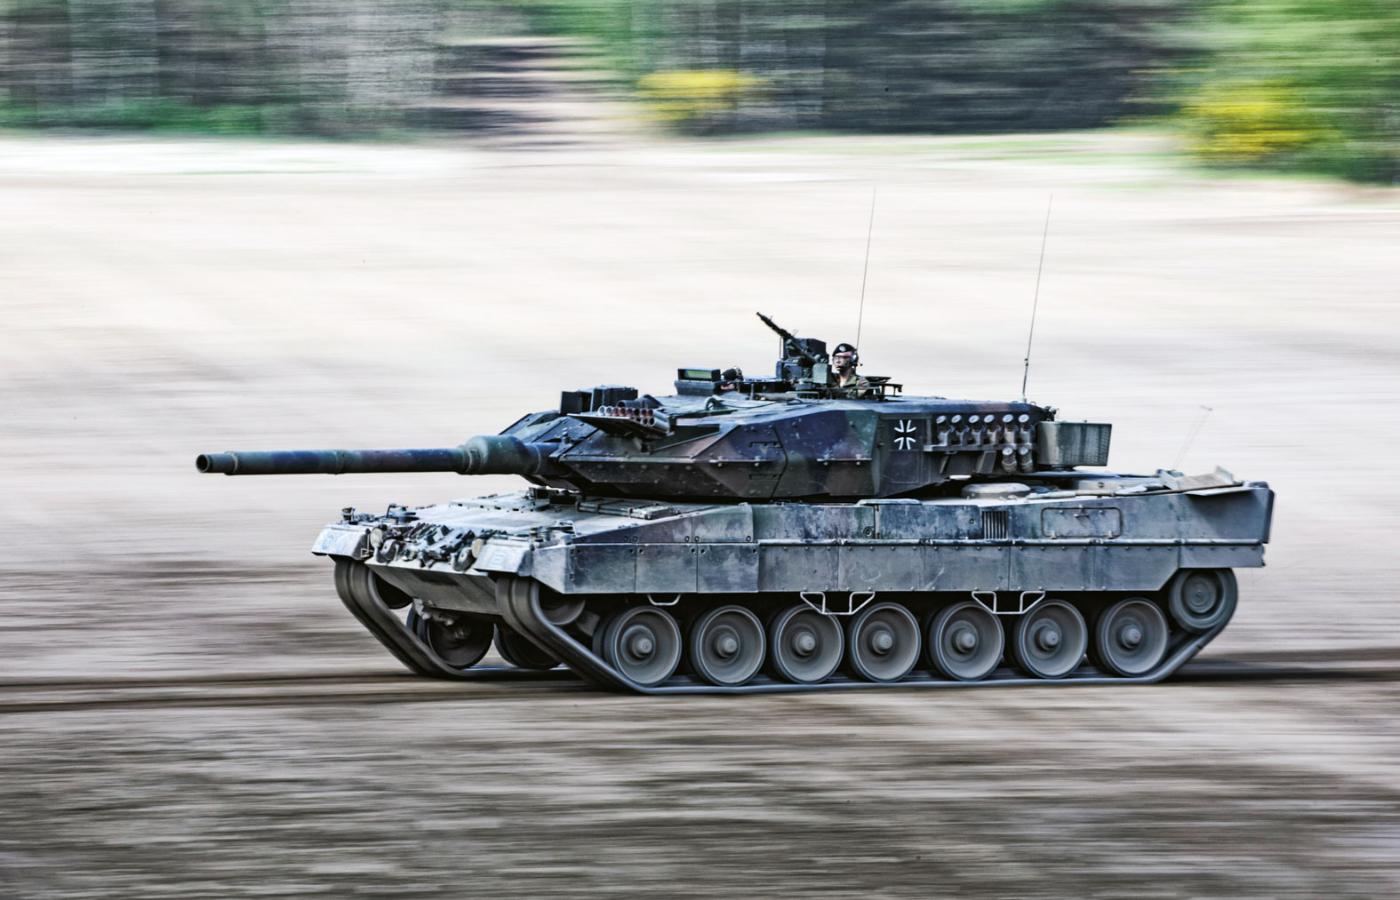 Leopardy stworzono w latach 80., aby zatrzymać sowieckie czołgi w Europie.